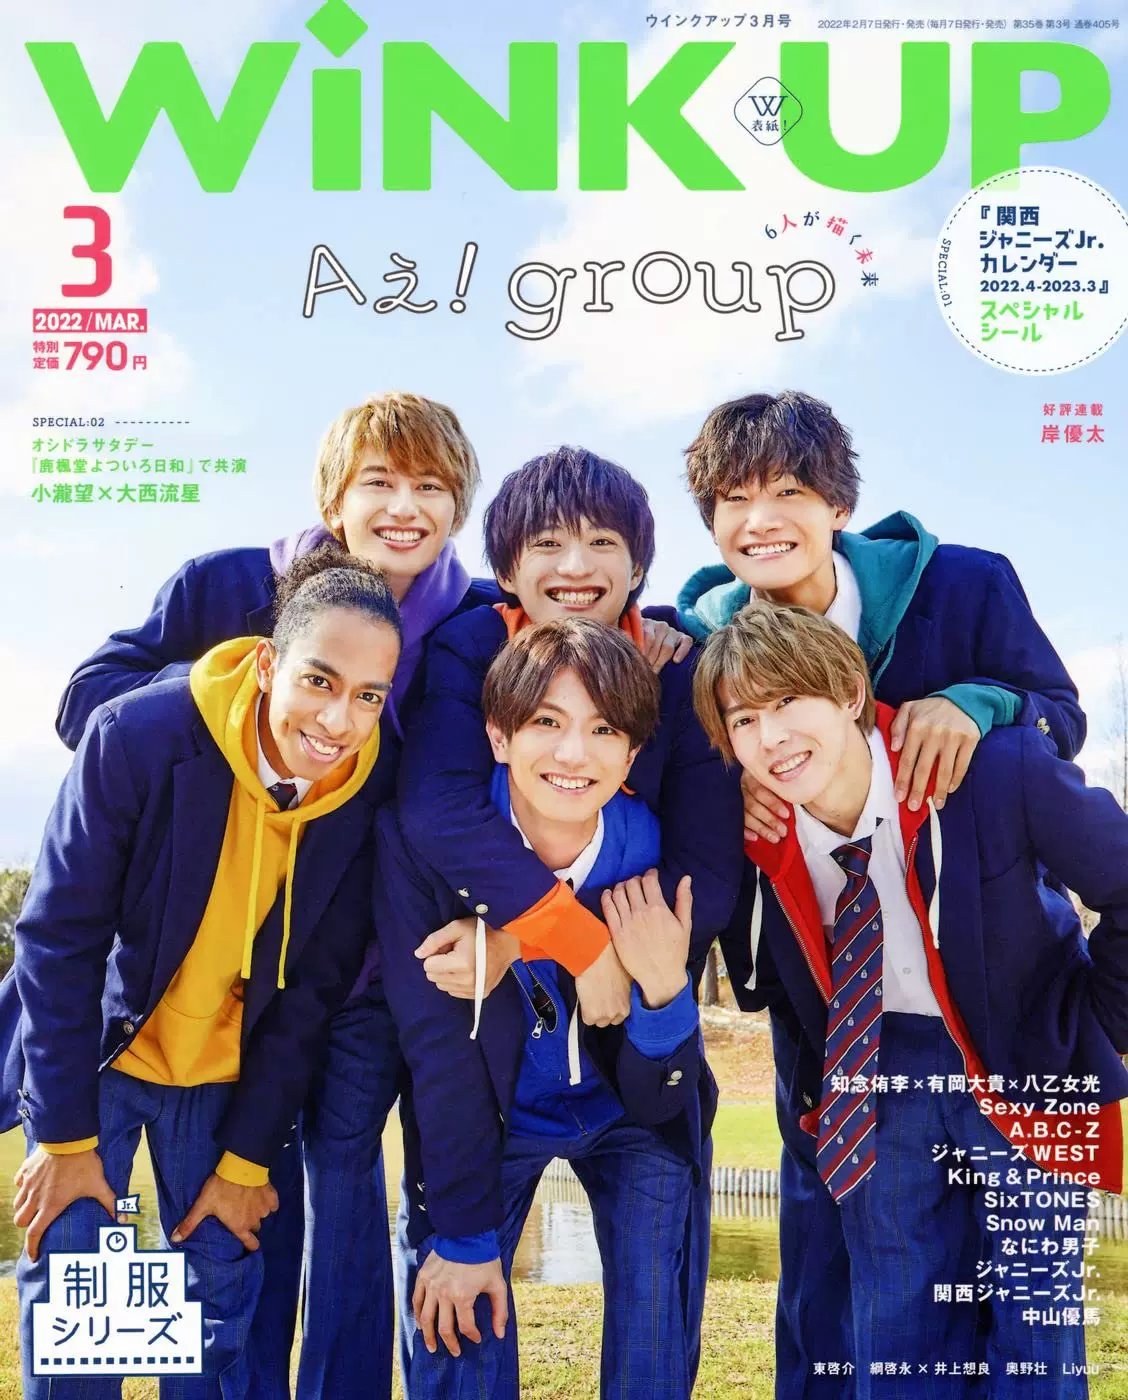 wink up 2016年9月号 切り抜き - アイドル